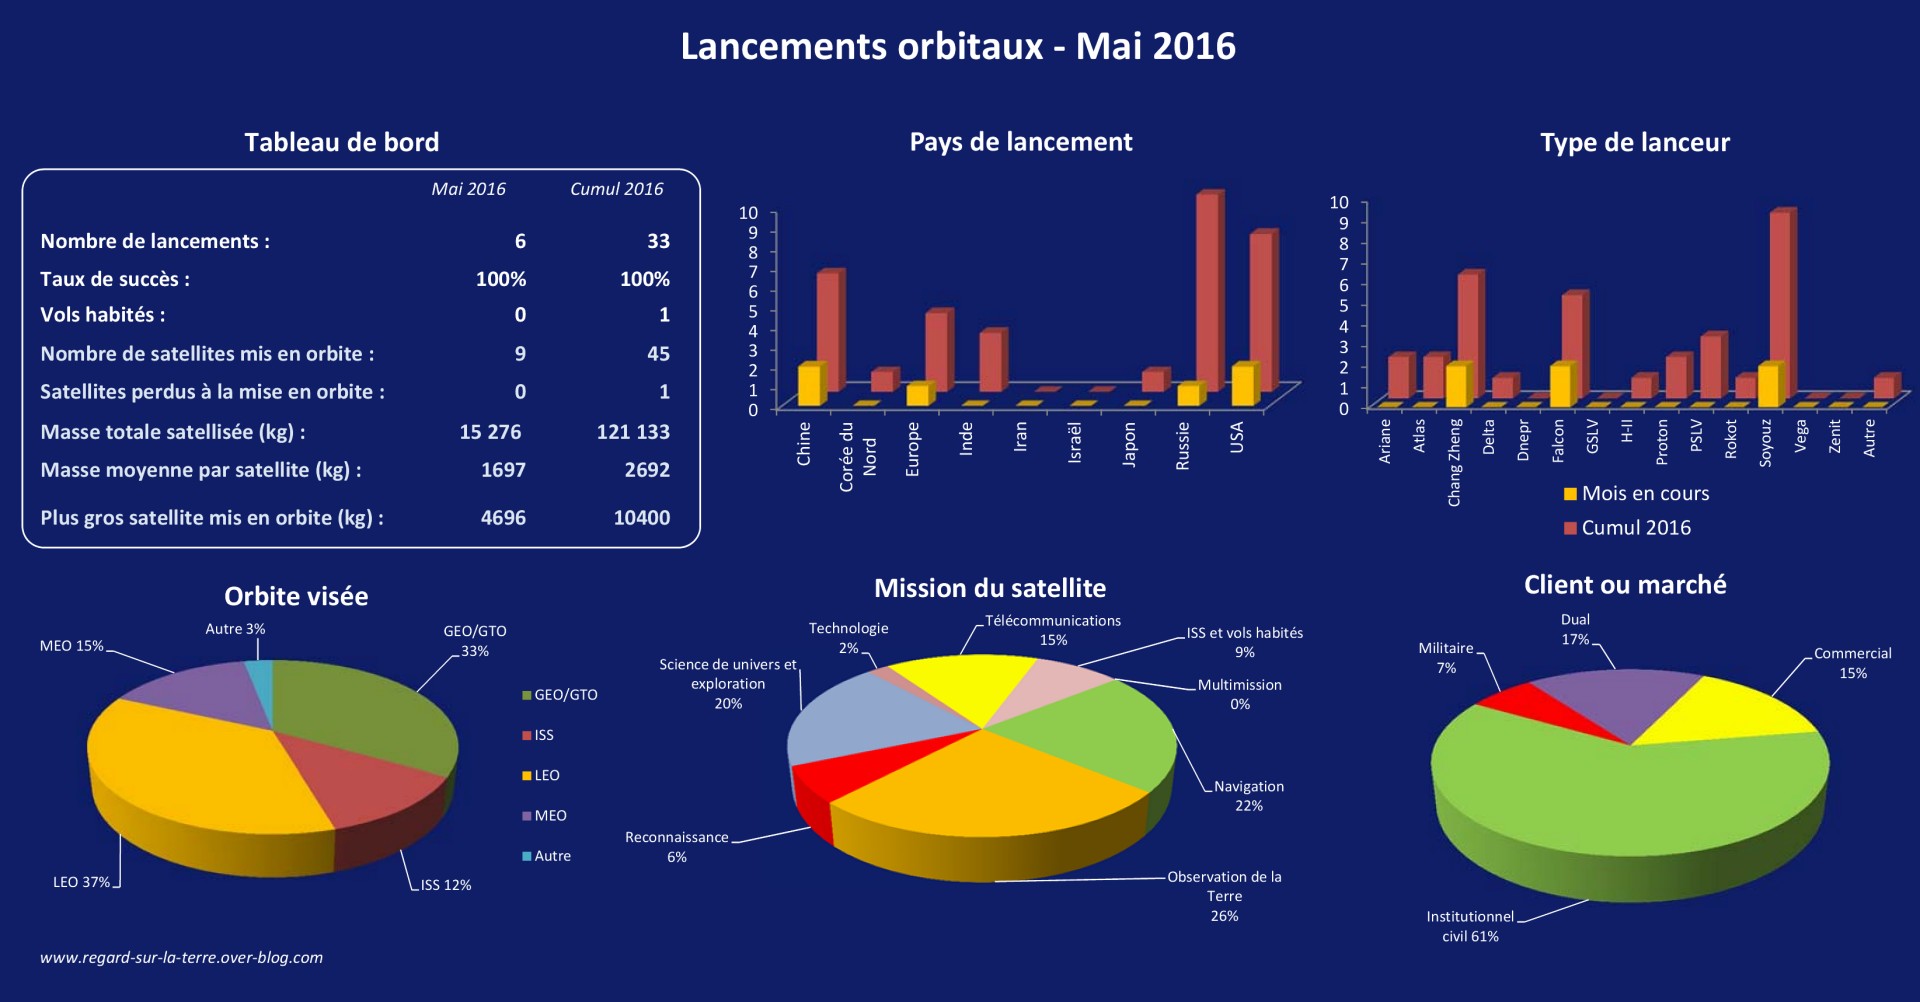 Bilan des lancements - lancements orbitaux - Launch log - Launch record - 2016 - Mai 2016 - Missions - orbites - type de lanceur - pays de lancement